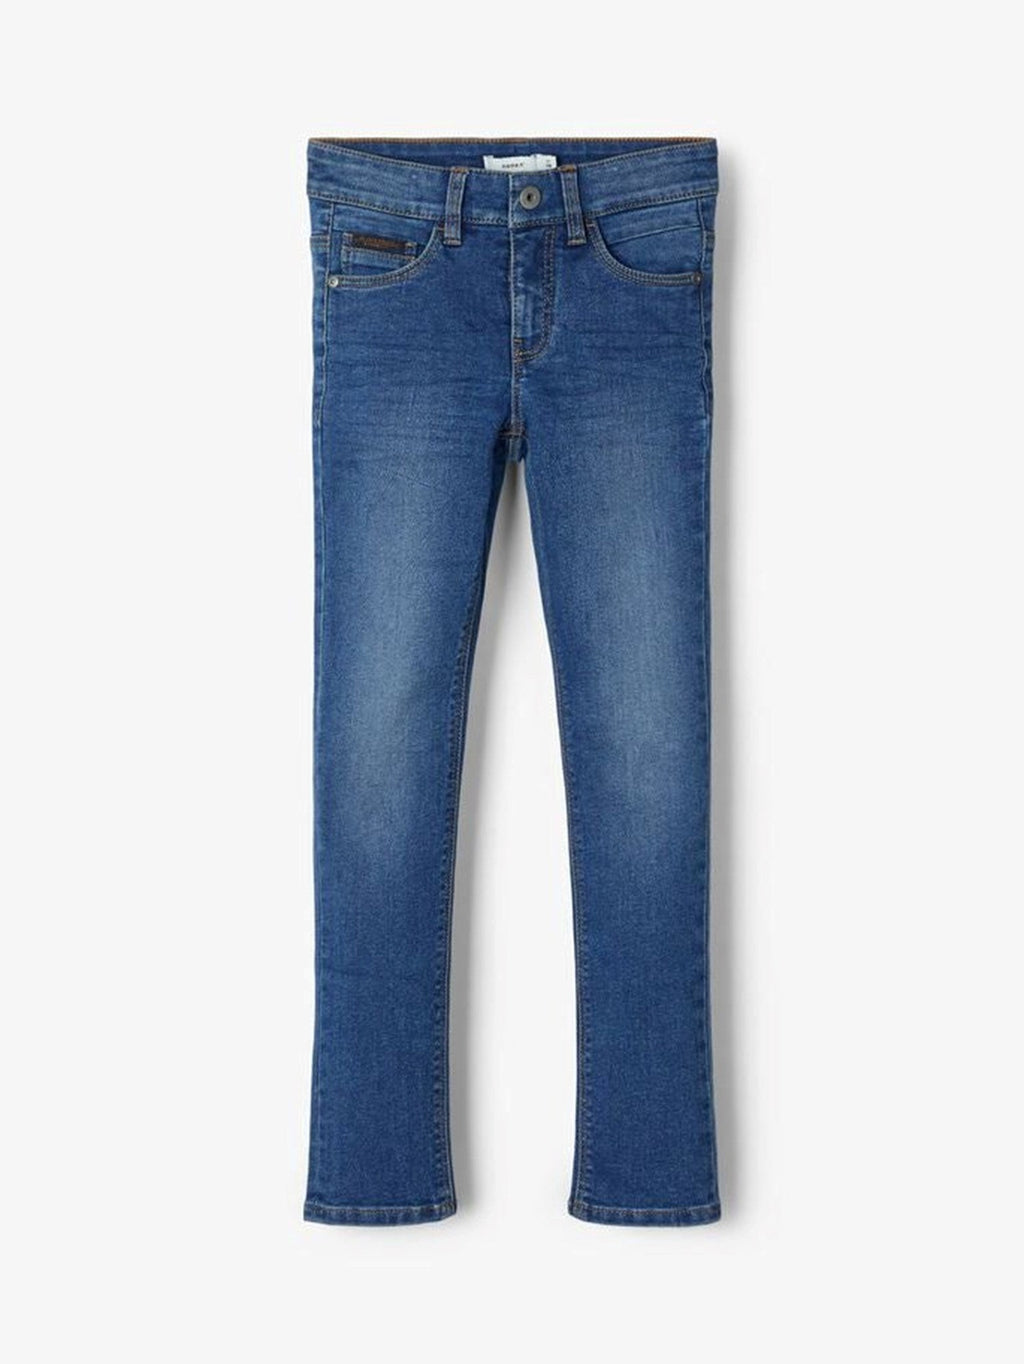 X -Slim Fit Jeans - Μεσαίο μπλε denim